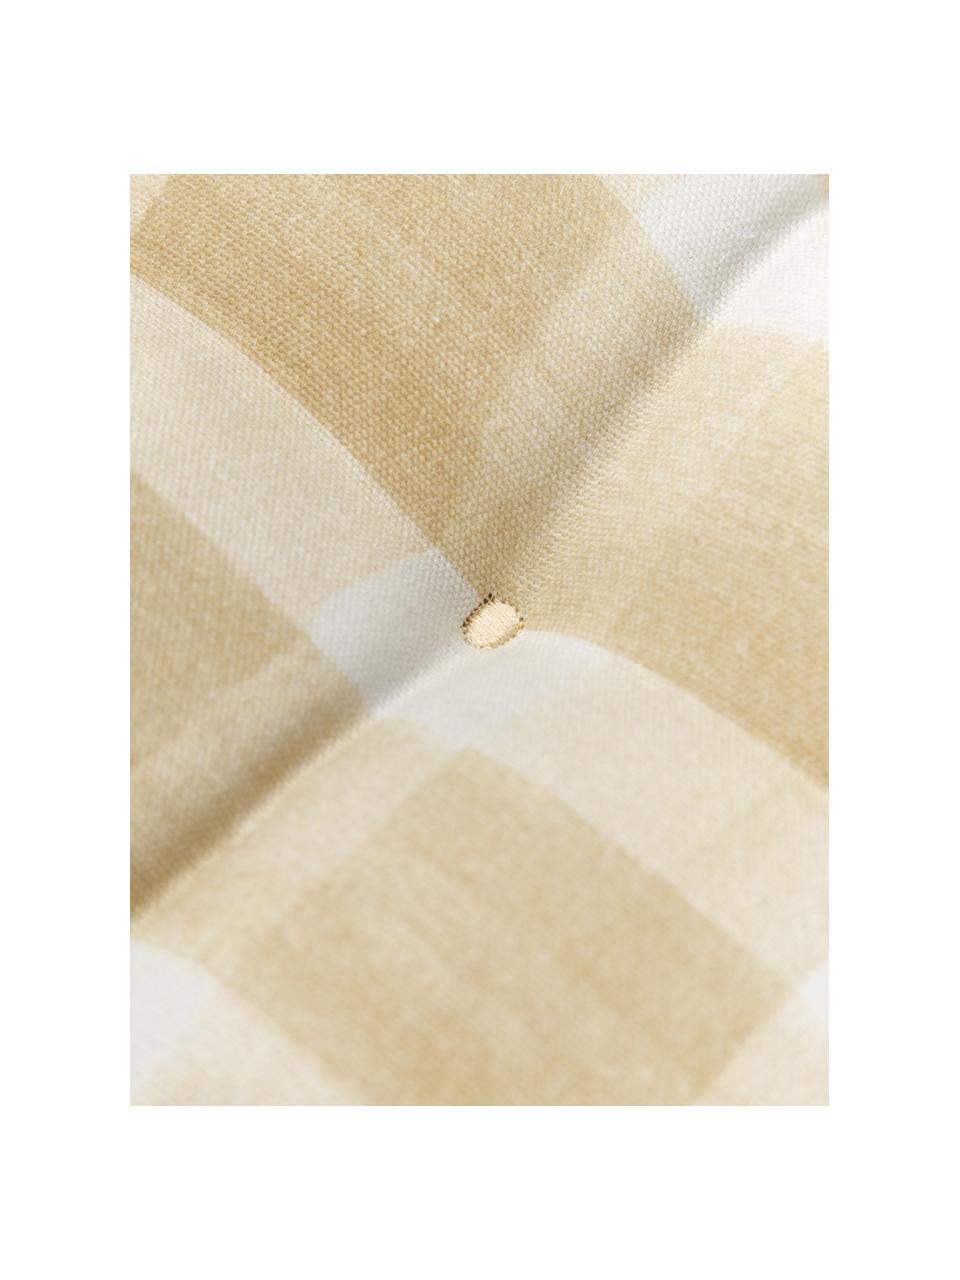 Kariertes Baumwoll-Sitzkissen Milène, Bezug: 100% Baumwolle, Beige, Hellgelb, Weiß, B 40 x L 40 cm